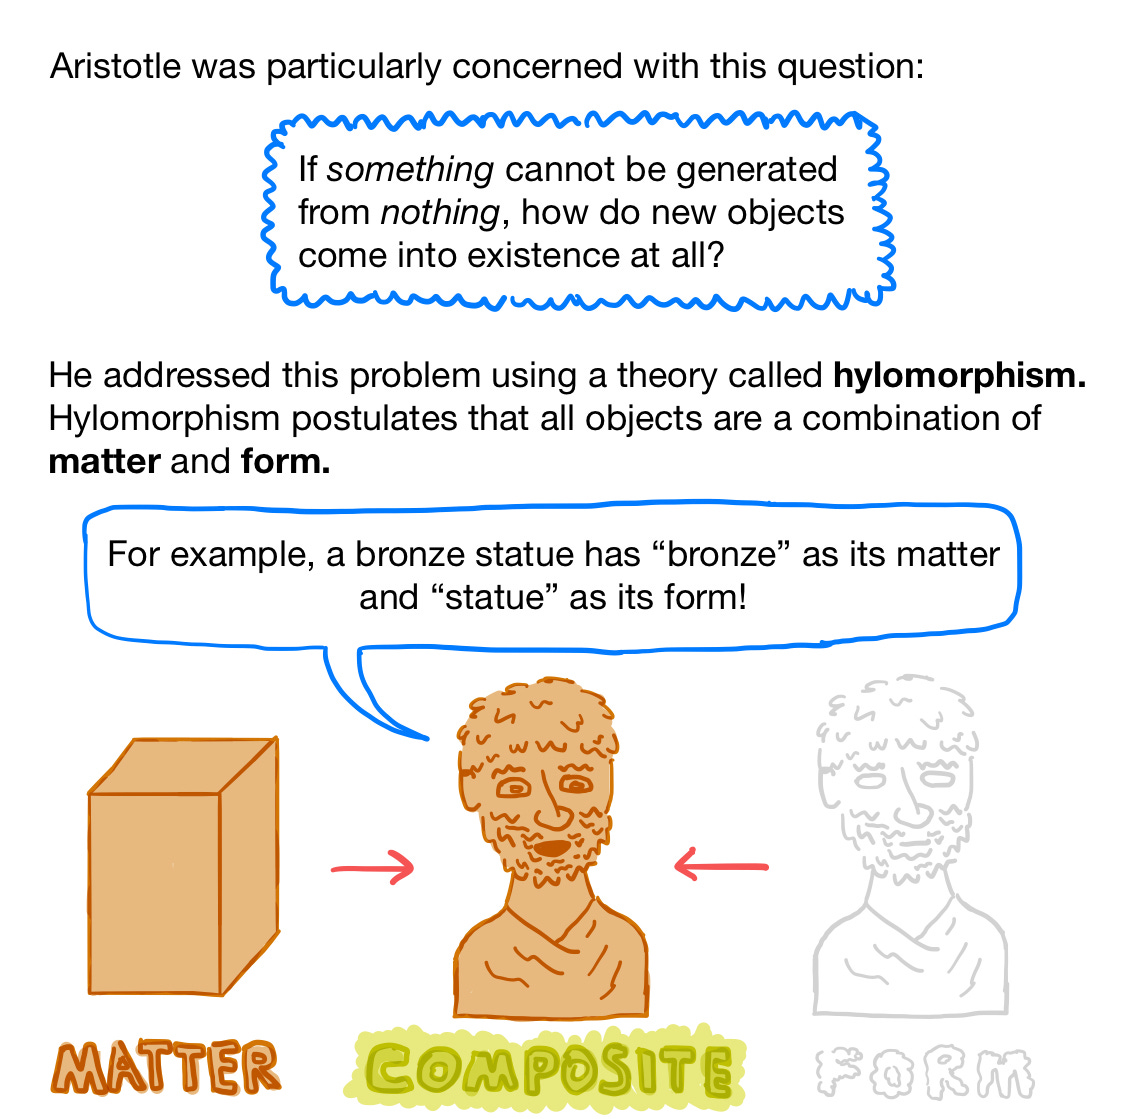 Aristotle's Hylomorphism